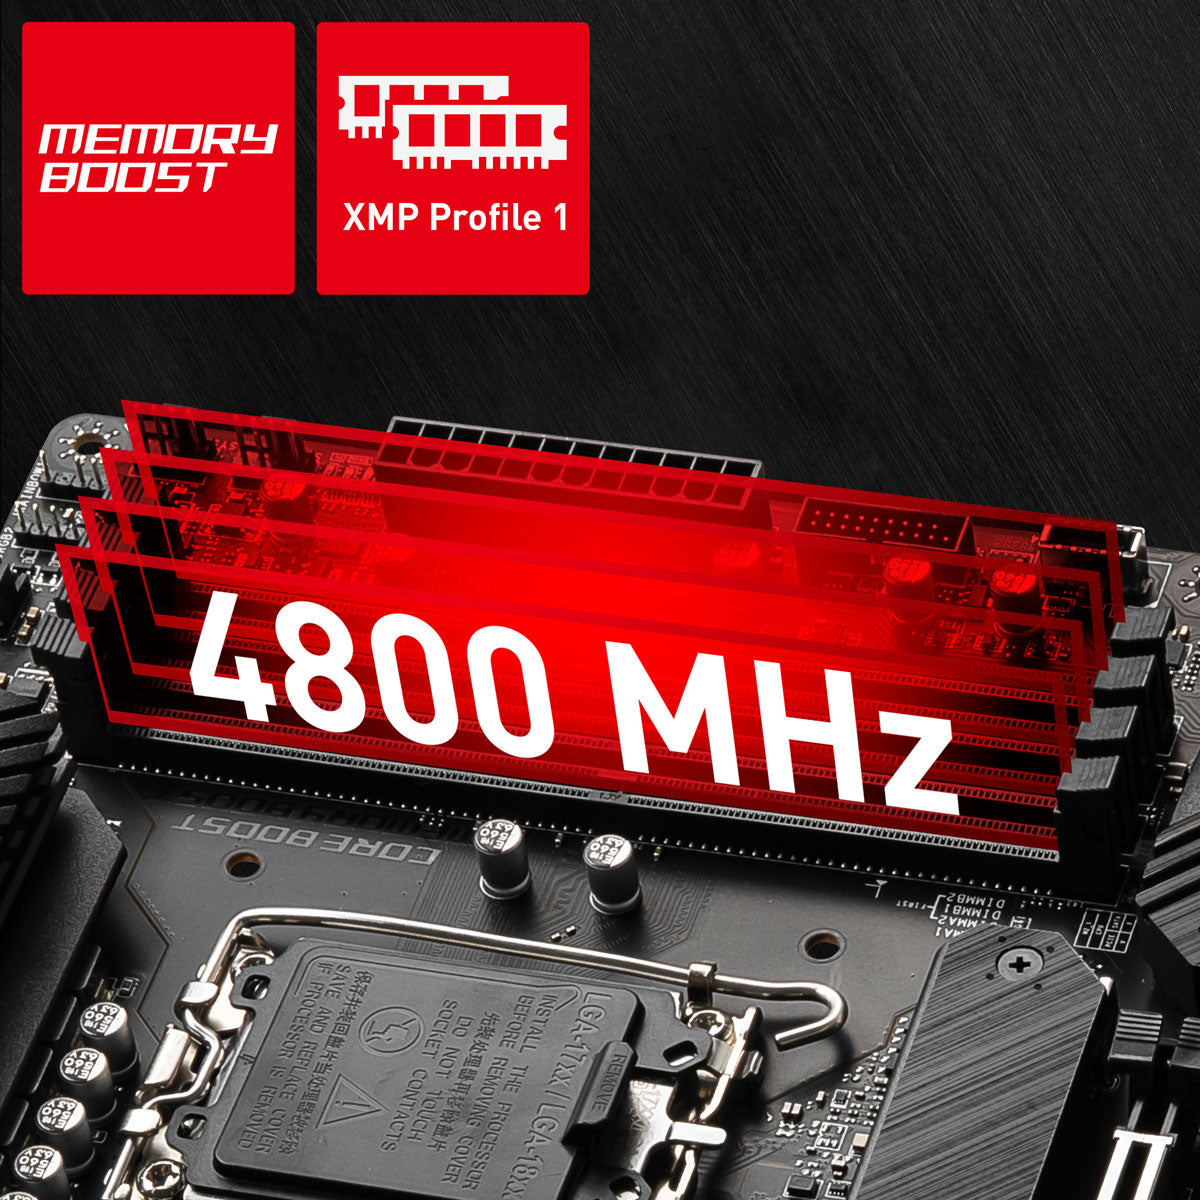 4 X DDR4 DUAL CHANNEL (4800 MHZ OC)